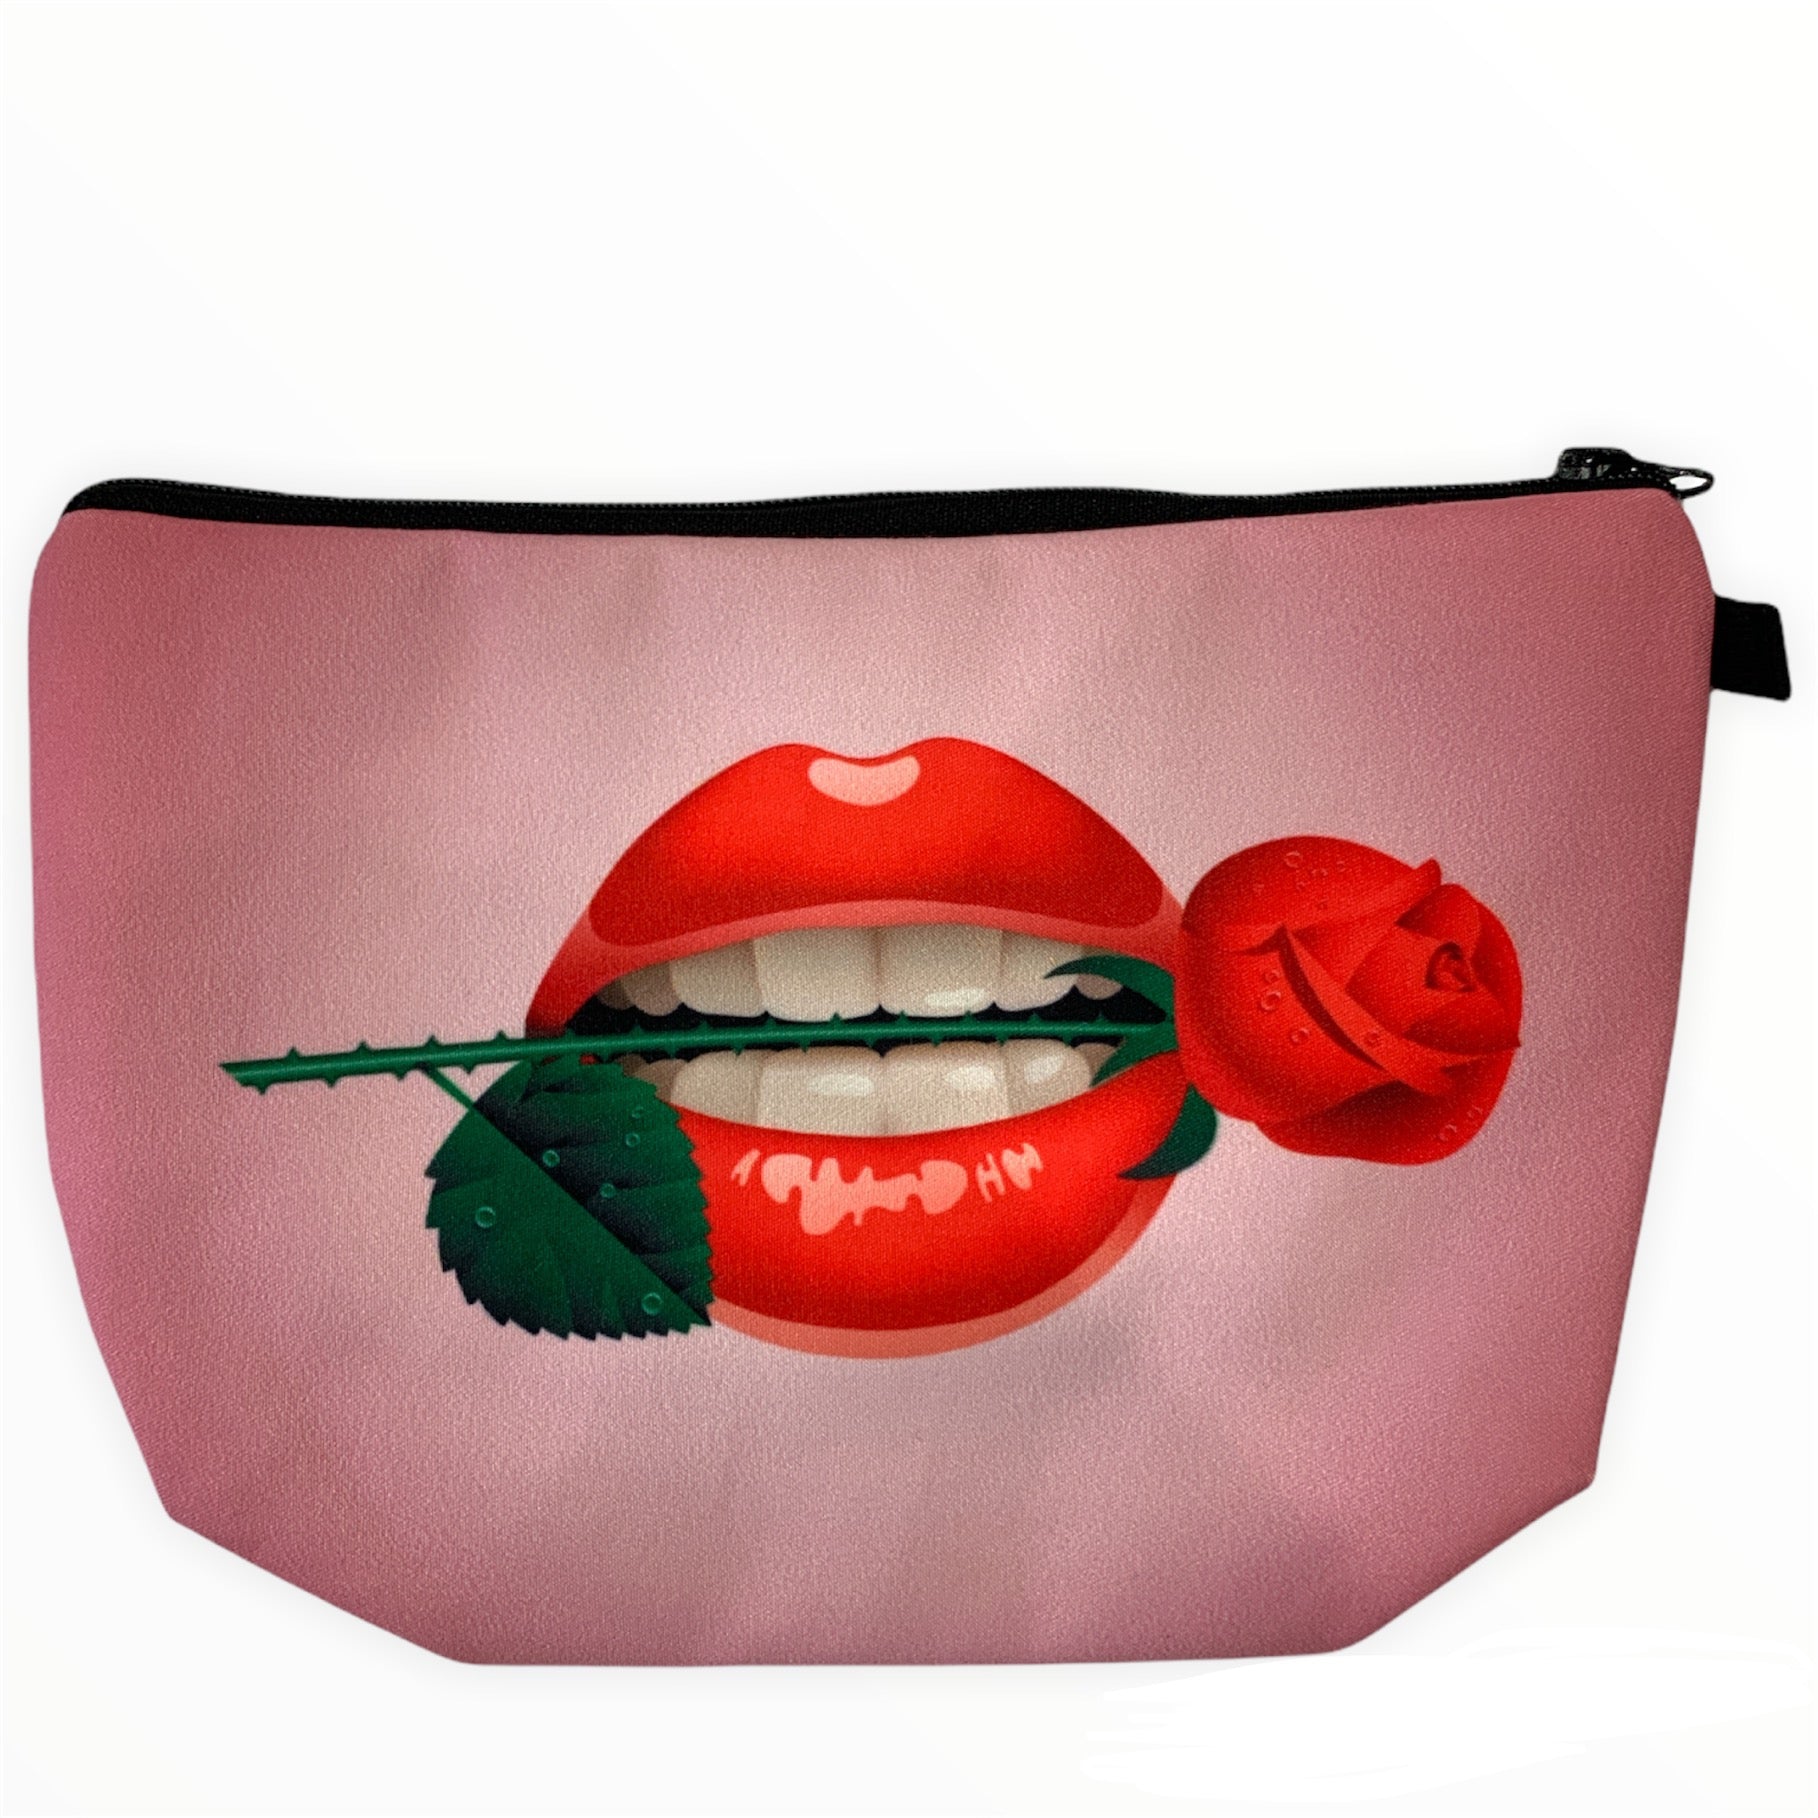 Rose Makeup Bag